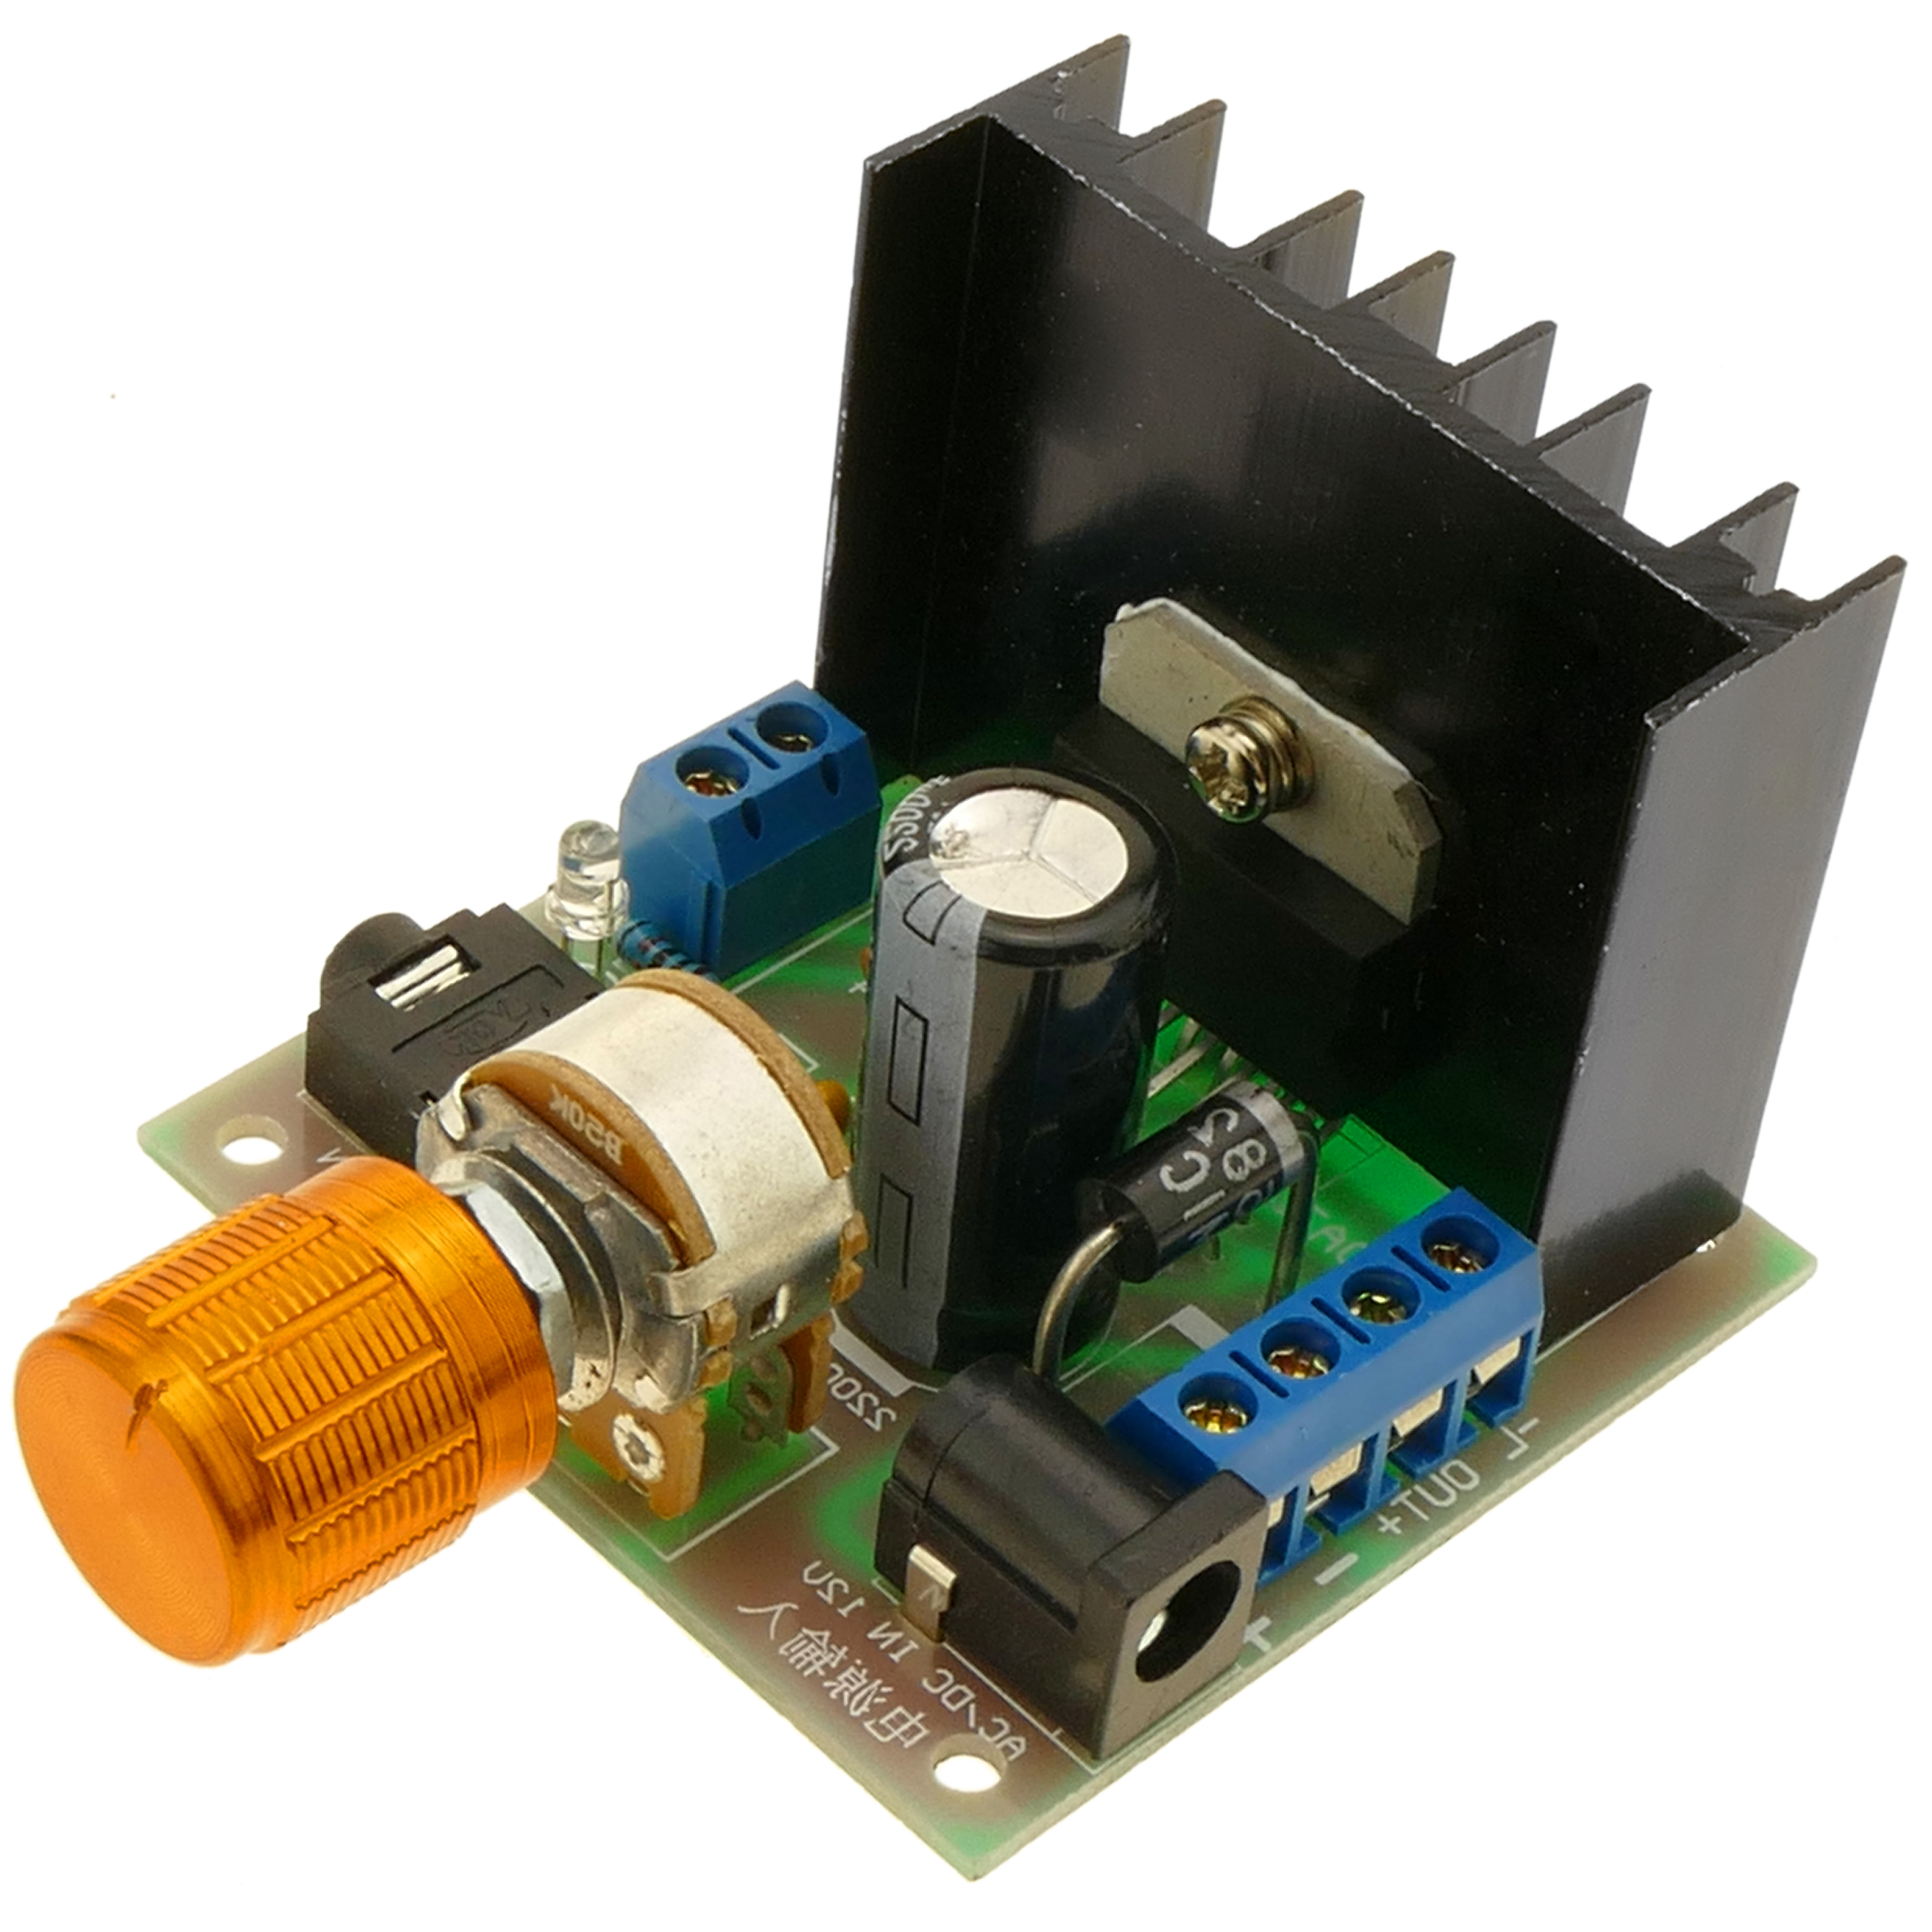 Amplificador de audio TDA7297, de 15W+15W, 12V, con potenciómetro. Modelo DW-0427